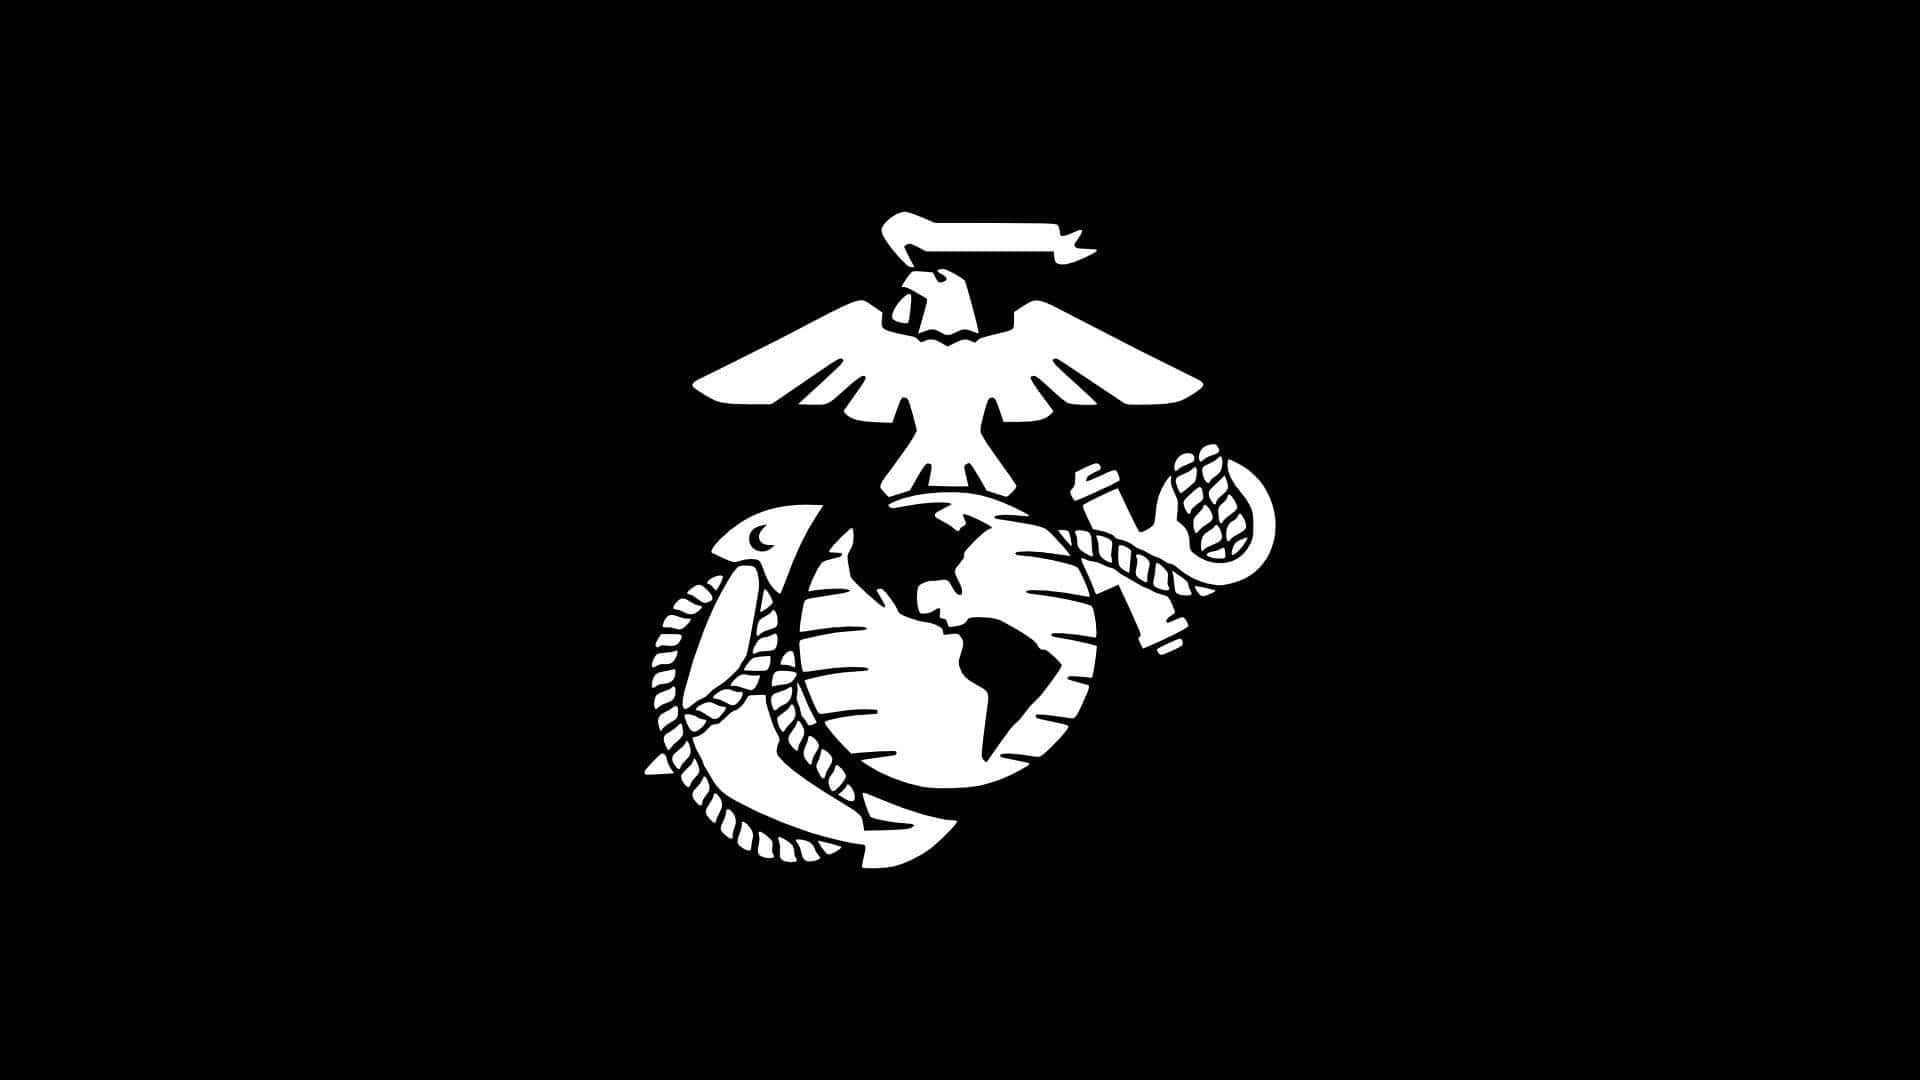 Officielllogotyp För United States Marine Corps. Wallpaper